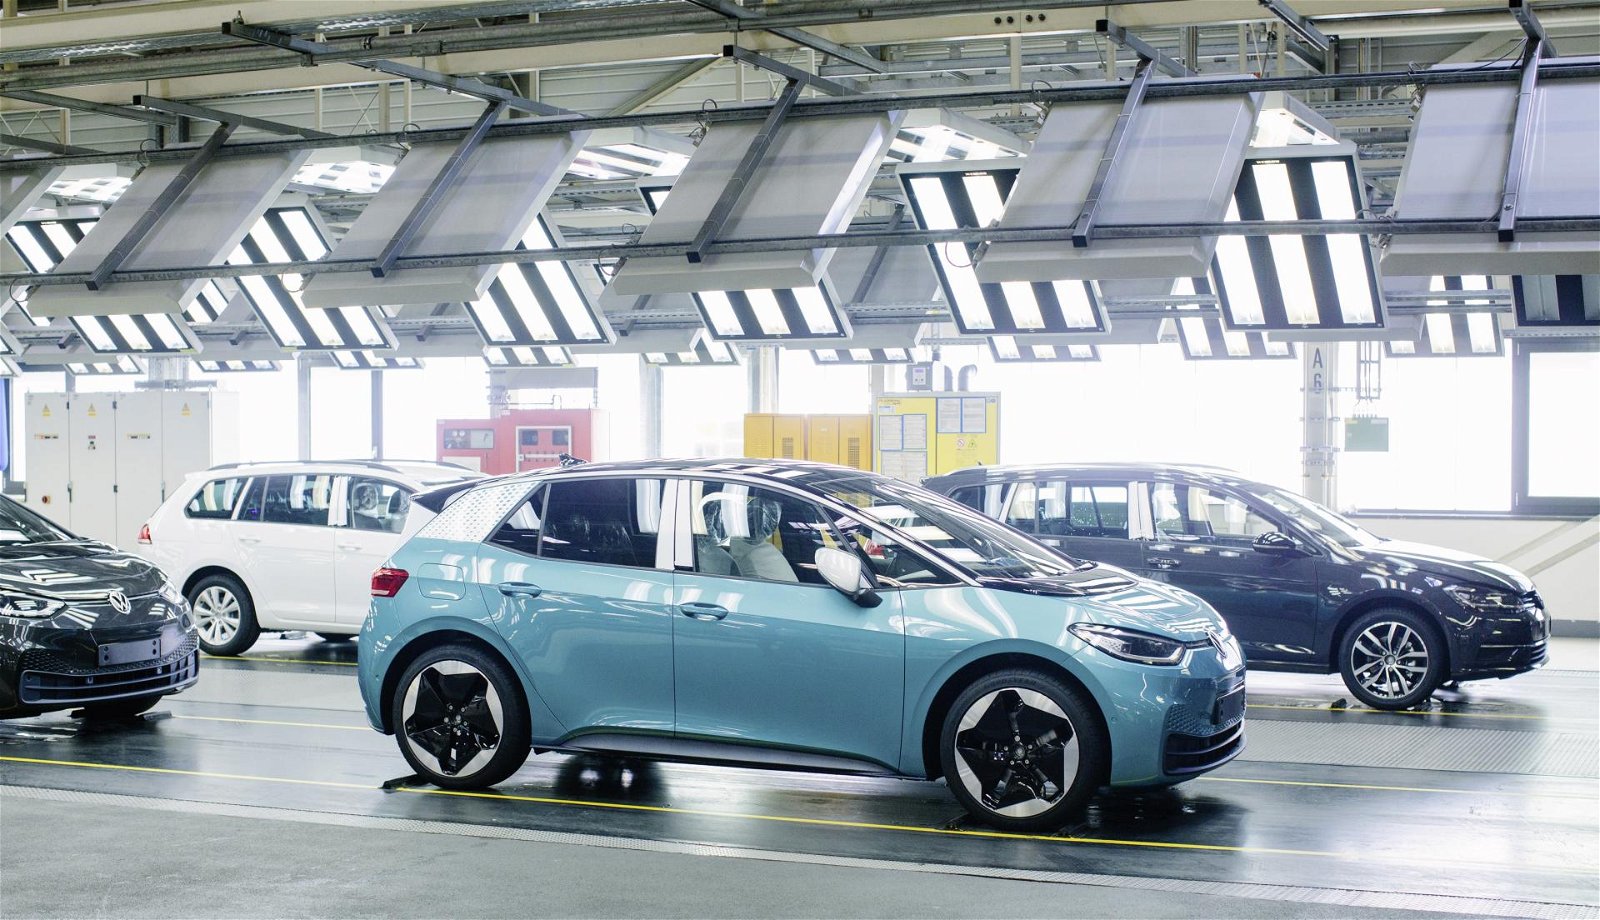 VW Konzern: Über 185.000 E-Auto-Zulassungen in 2020 erwartet